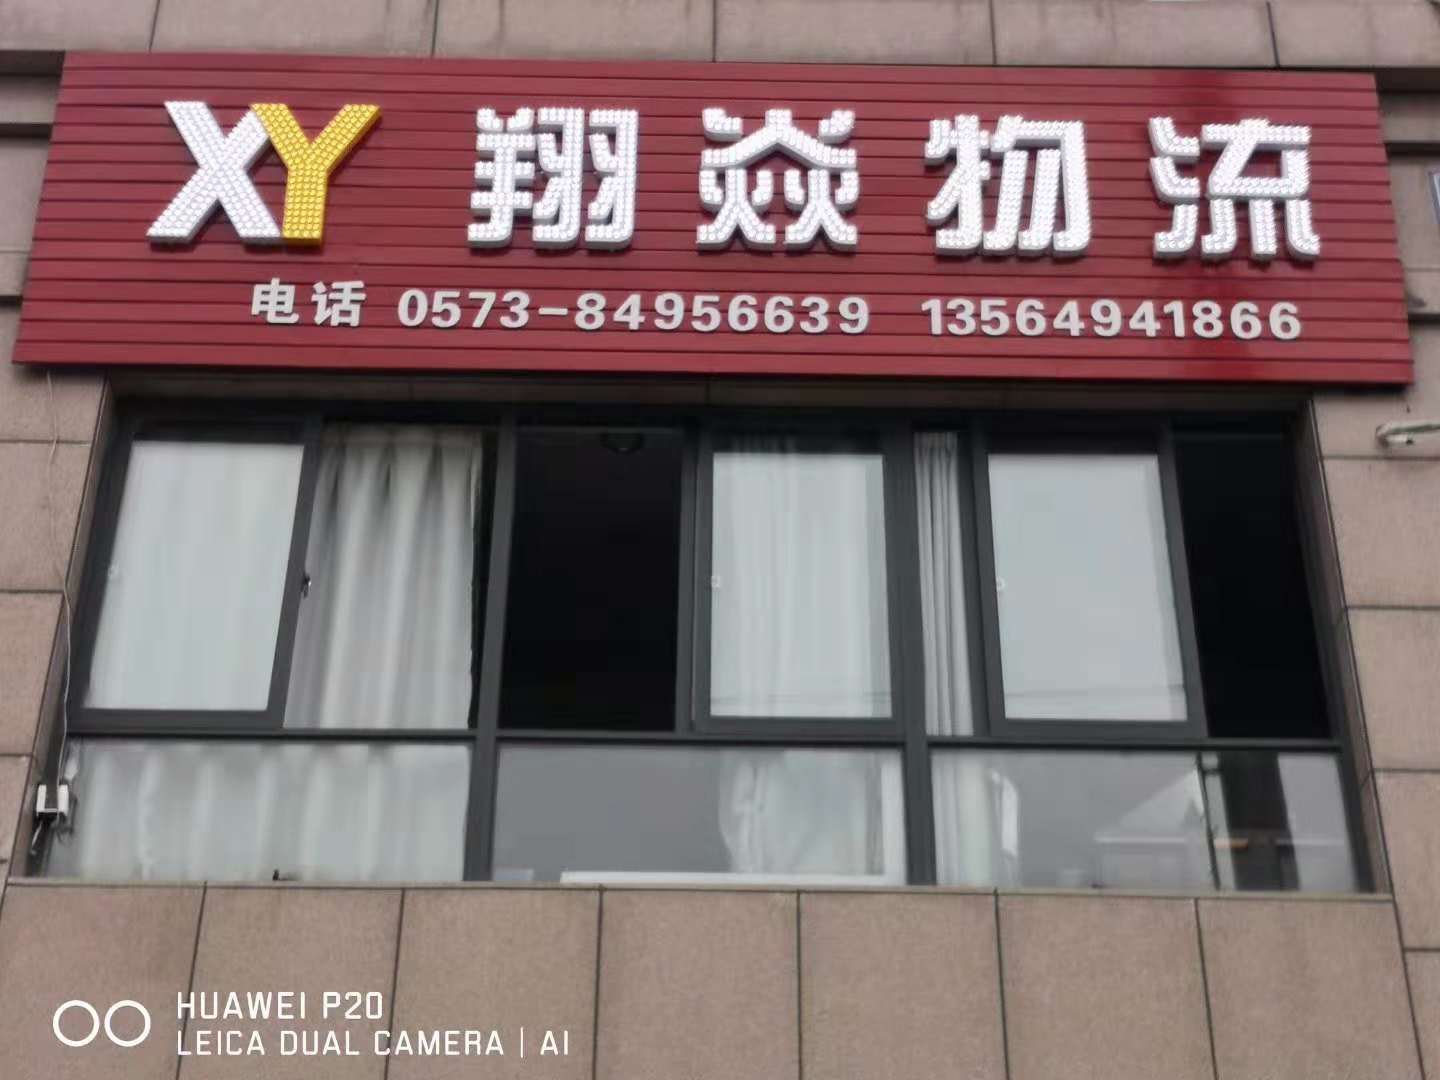 上海到广东广州配送公司电话 上海到广东广州配送公司